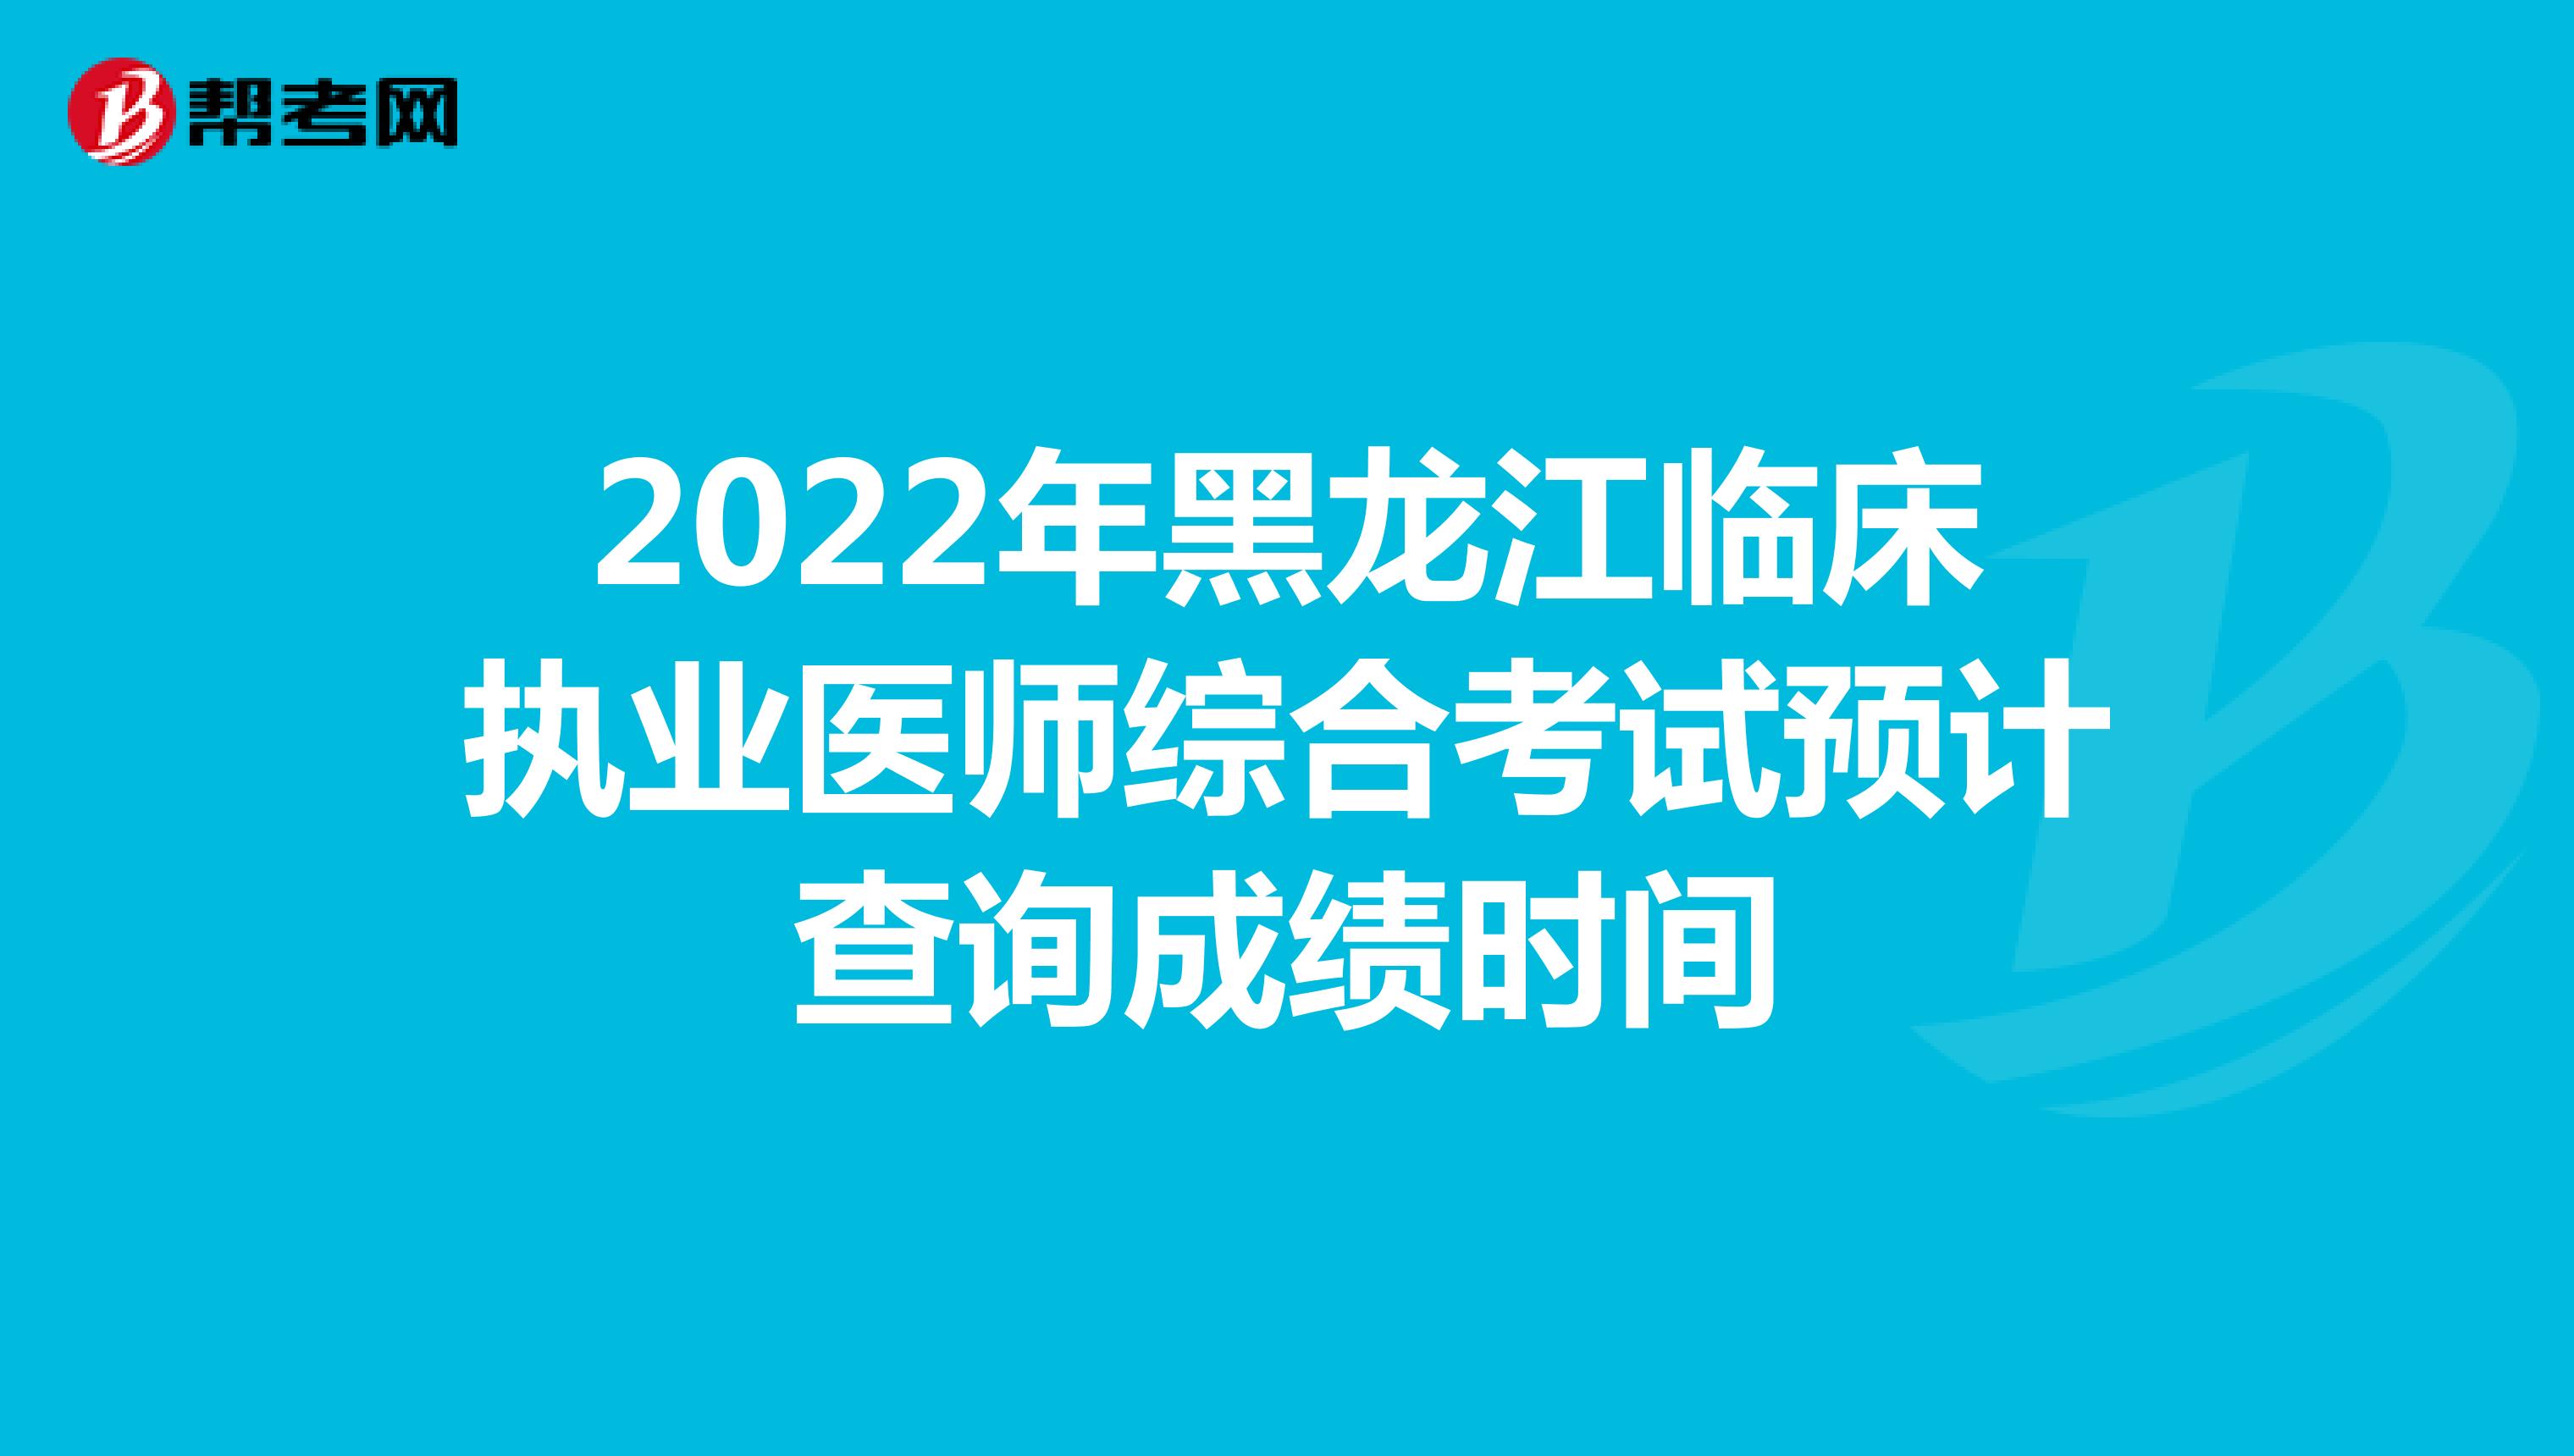 2022年黑龙江临床执业医师综合考试预计查询成绩时间